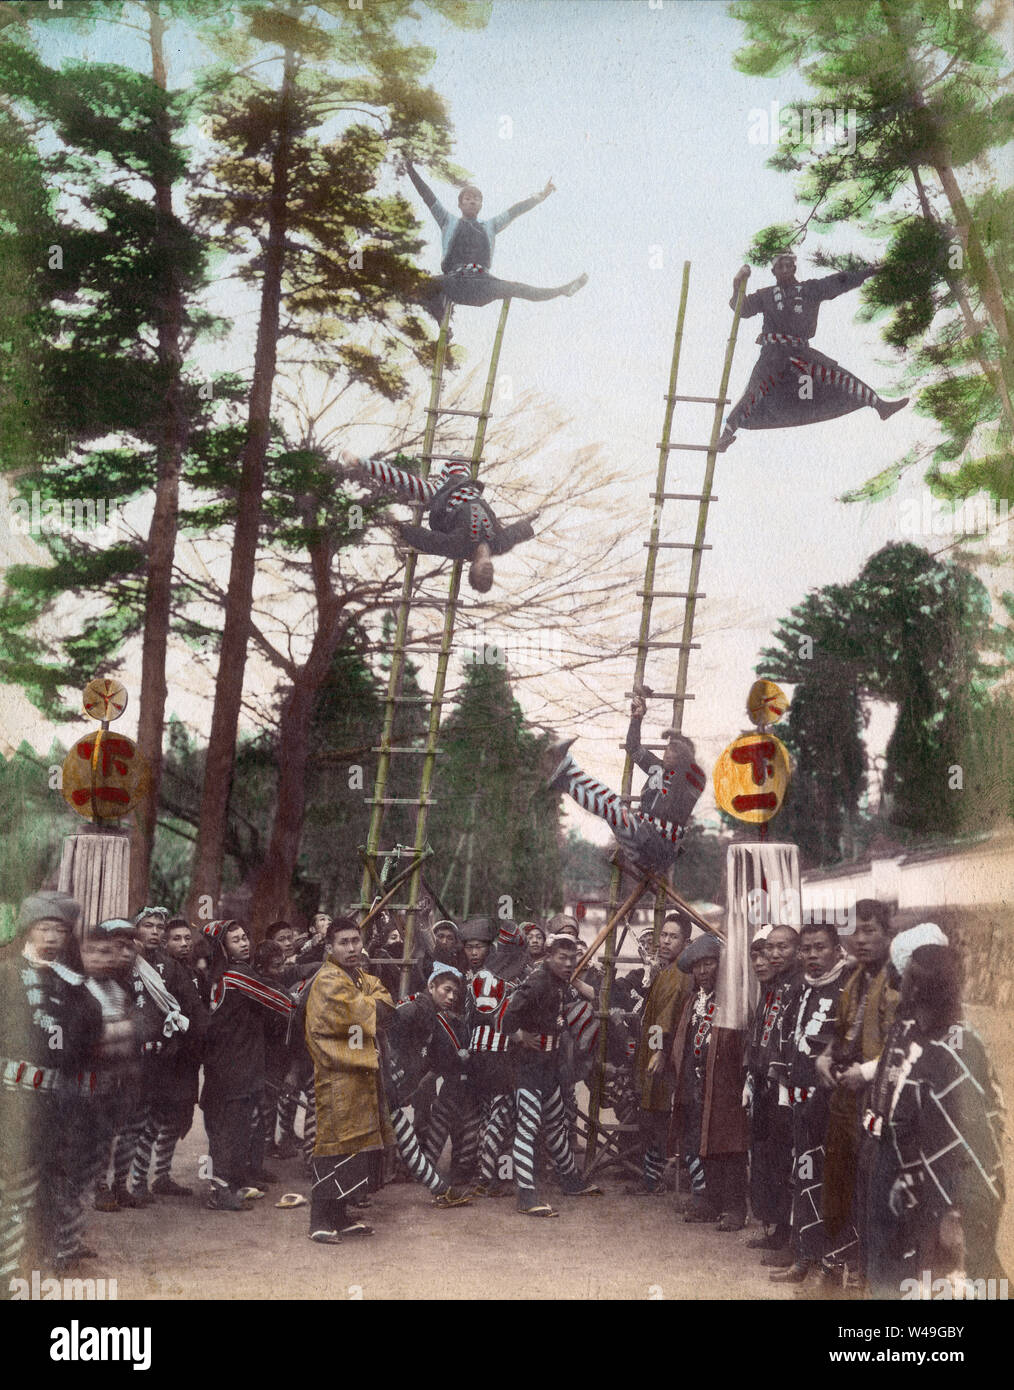 [1890s Japan - Japanische Feuerwehrmänner, die Akrobatik] - Feuerwehrmänner in happi Mäntel durchführen akrobatischen Stunts auf Bambus Leitern. Die Leiter Stunts waren die wichtigsten Ereignis der Japanischen ins neue Jahr feiern. Die Demonstrationen, die sogenannten Dezome-shiki, waren dazu gedacht, die Menschen auf die Gefahren des Feuers zu warnen und die Flexibilität und den Mut der Feuerwehrleute zu demonstrieren. 19 Vintage albumen Foto. Stockfoto